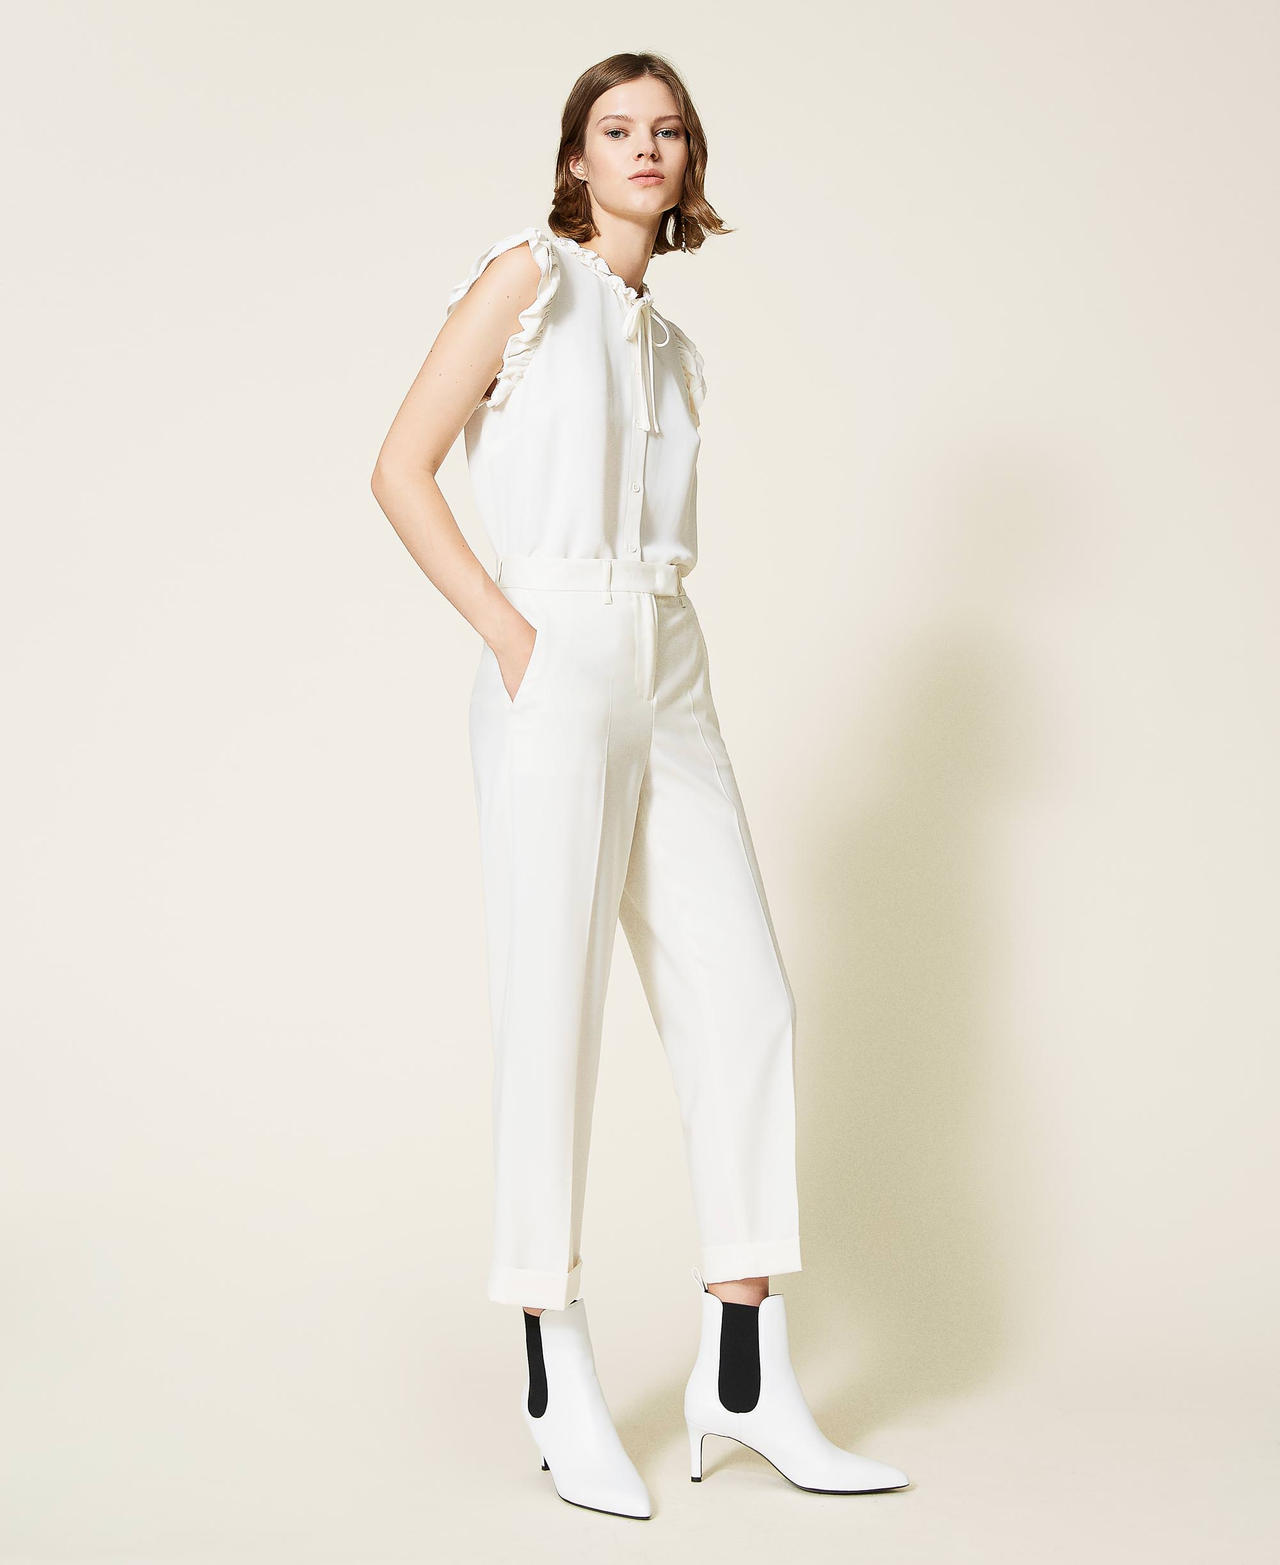 Pantalon cropped en laine Blanc Neige Femme 212TP2492-02